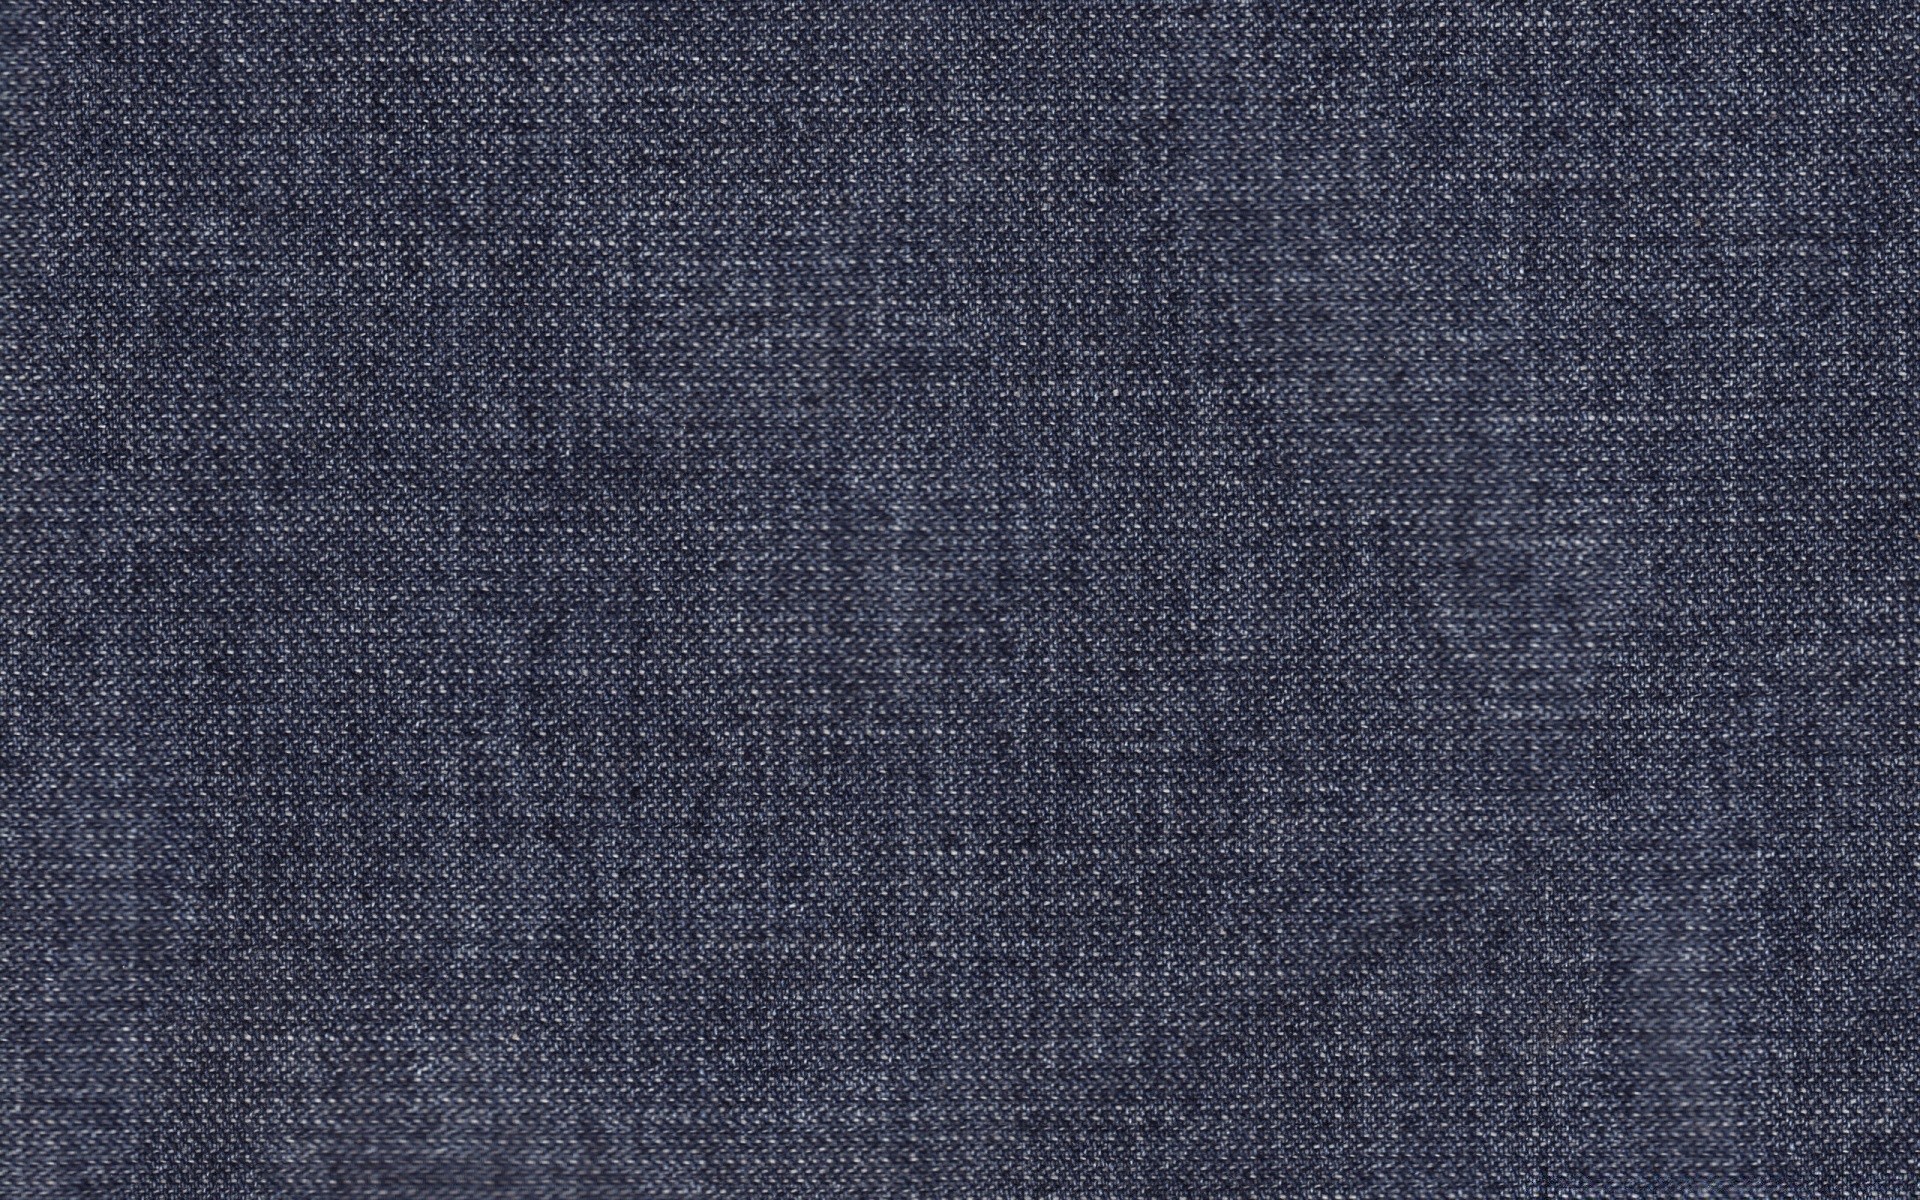 текстуры ткань хлопок холст текстиль рабочего стола фон белье шаблон носить аннотация грубо волокна брюки нить сотка обои стежка дизайн поверхность